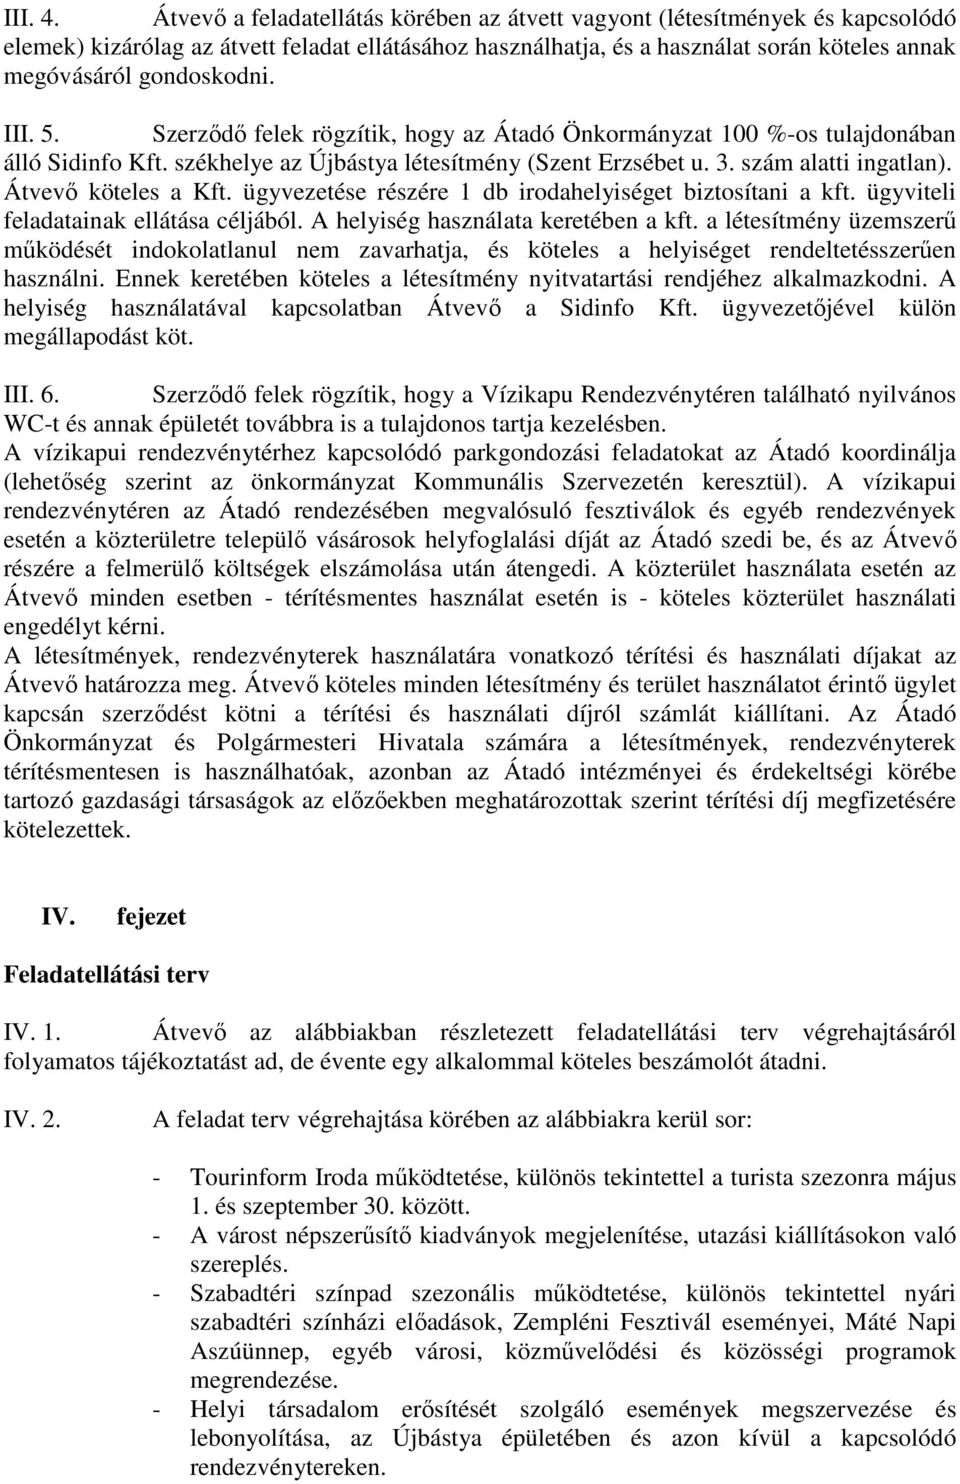 III. 5. Szerzıdı felek rögzítik, hogy az Átadó Önkormányzat 100 %-os tulajdonában álló Sidinfo Kft. székhelye az Újbástya létesítmény (Szent Erzsébet u. 3. szám alatti ingatlan). Átvevı köteles a Kft.